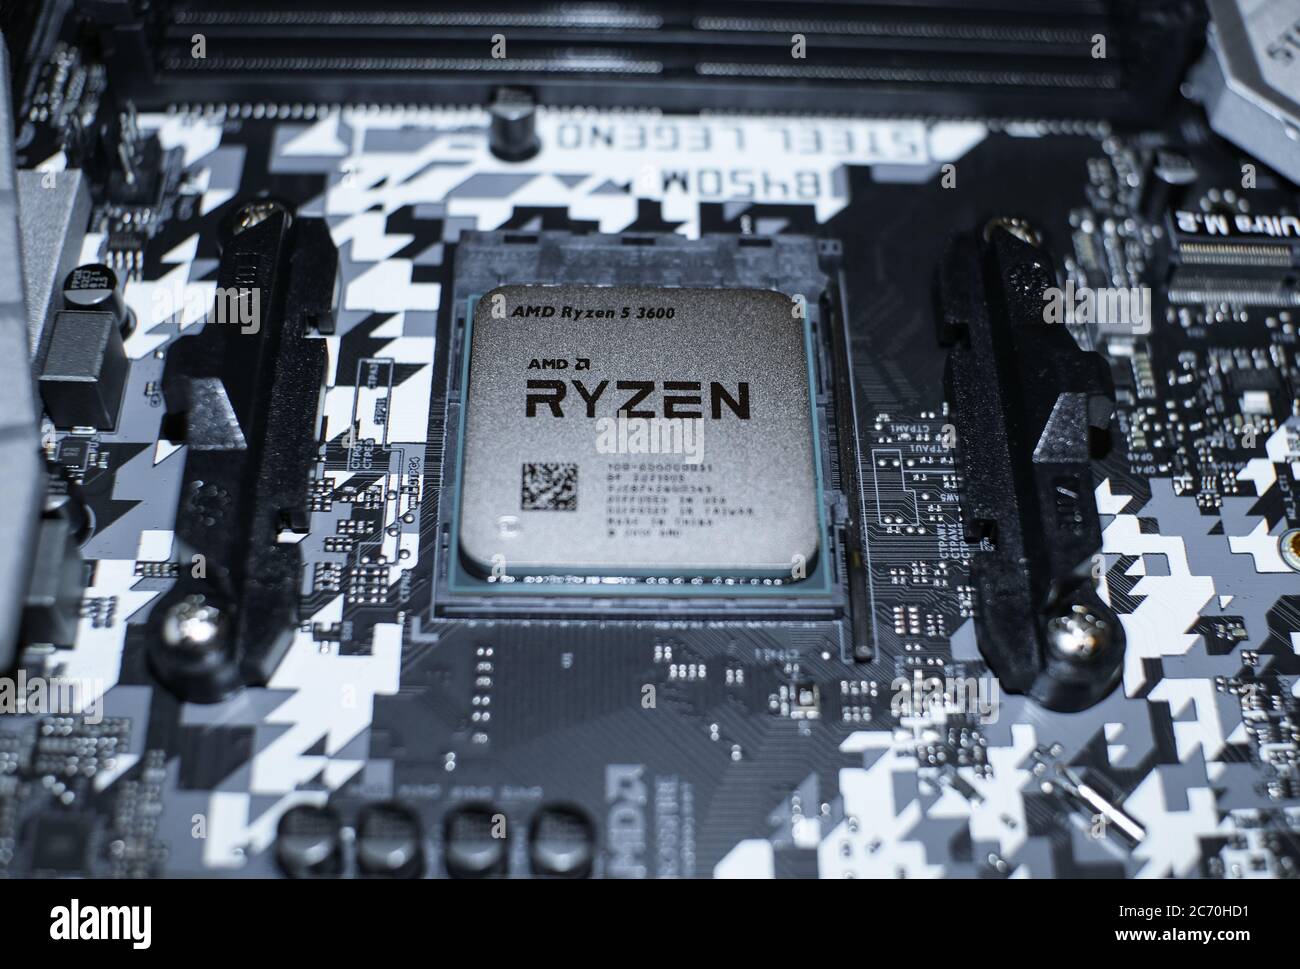 Roma, italia - 1 luglio 2020: CPU PC desktop AMD ryzen 3600 installata su scheda madre hi tech,componenti per computer Foto Stock